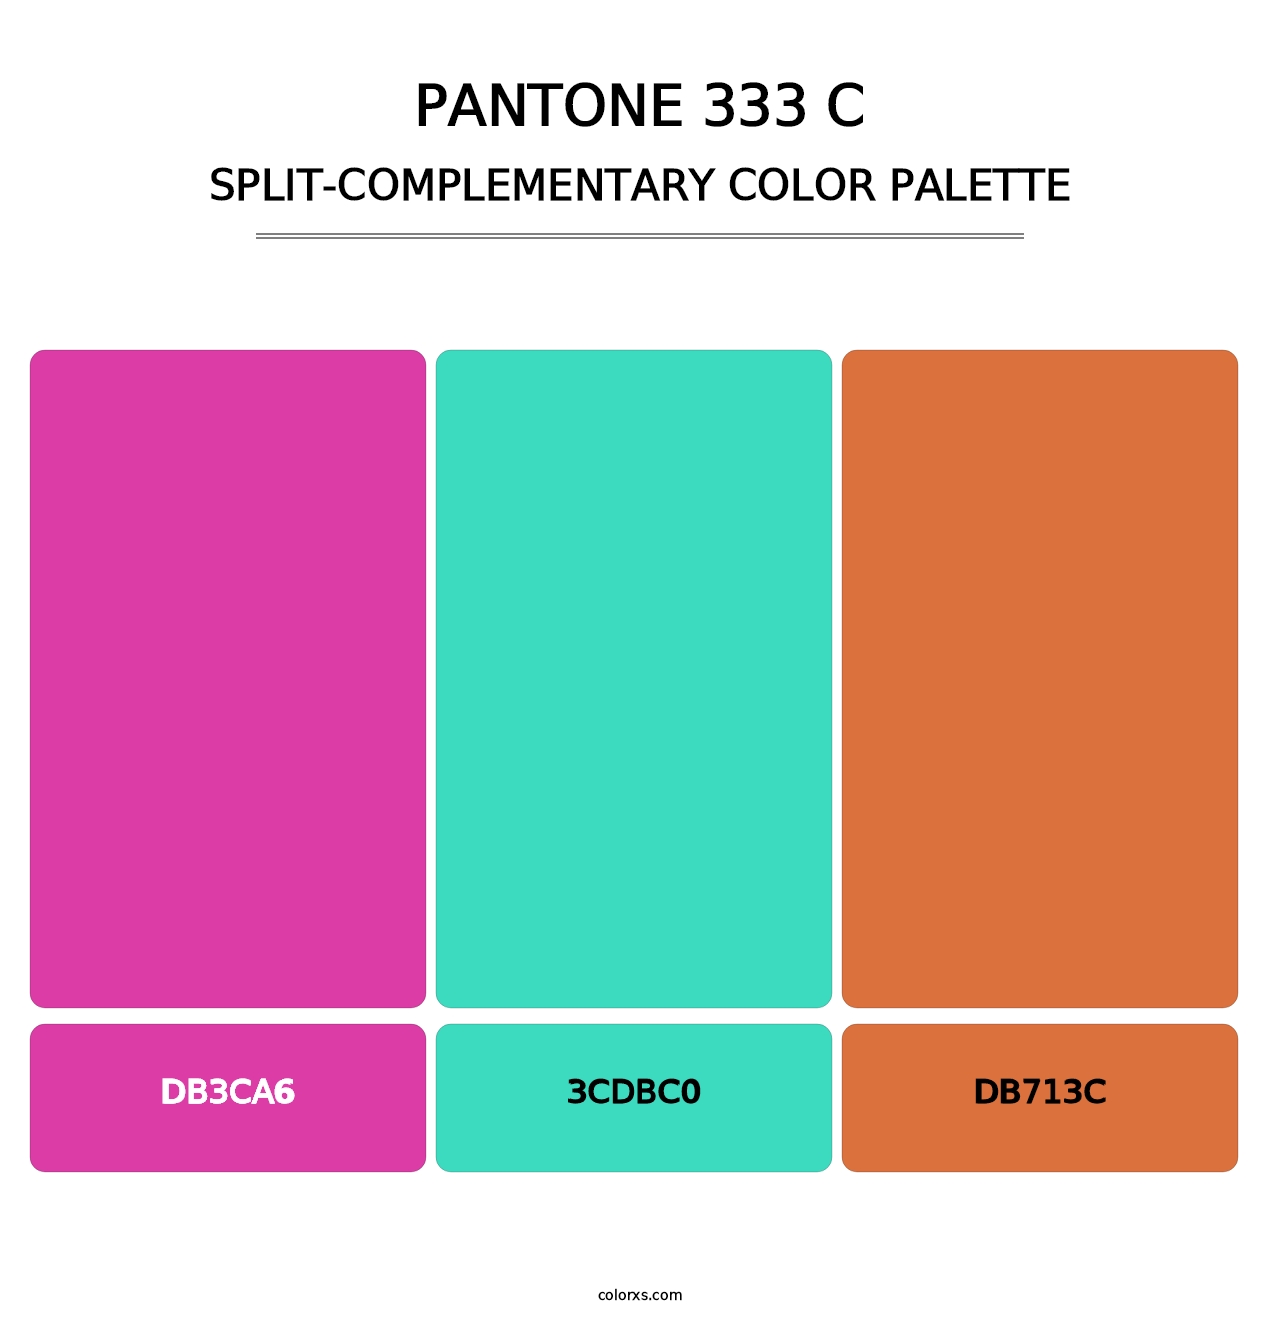 PANTONE 333 C - Split-Complementary Color Palette